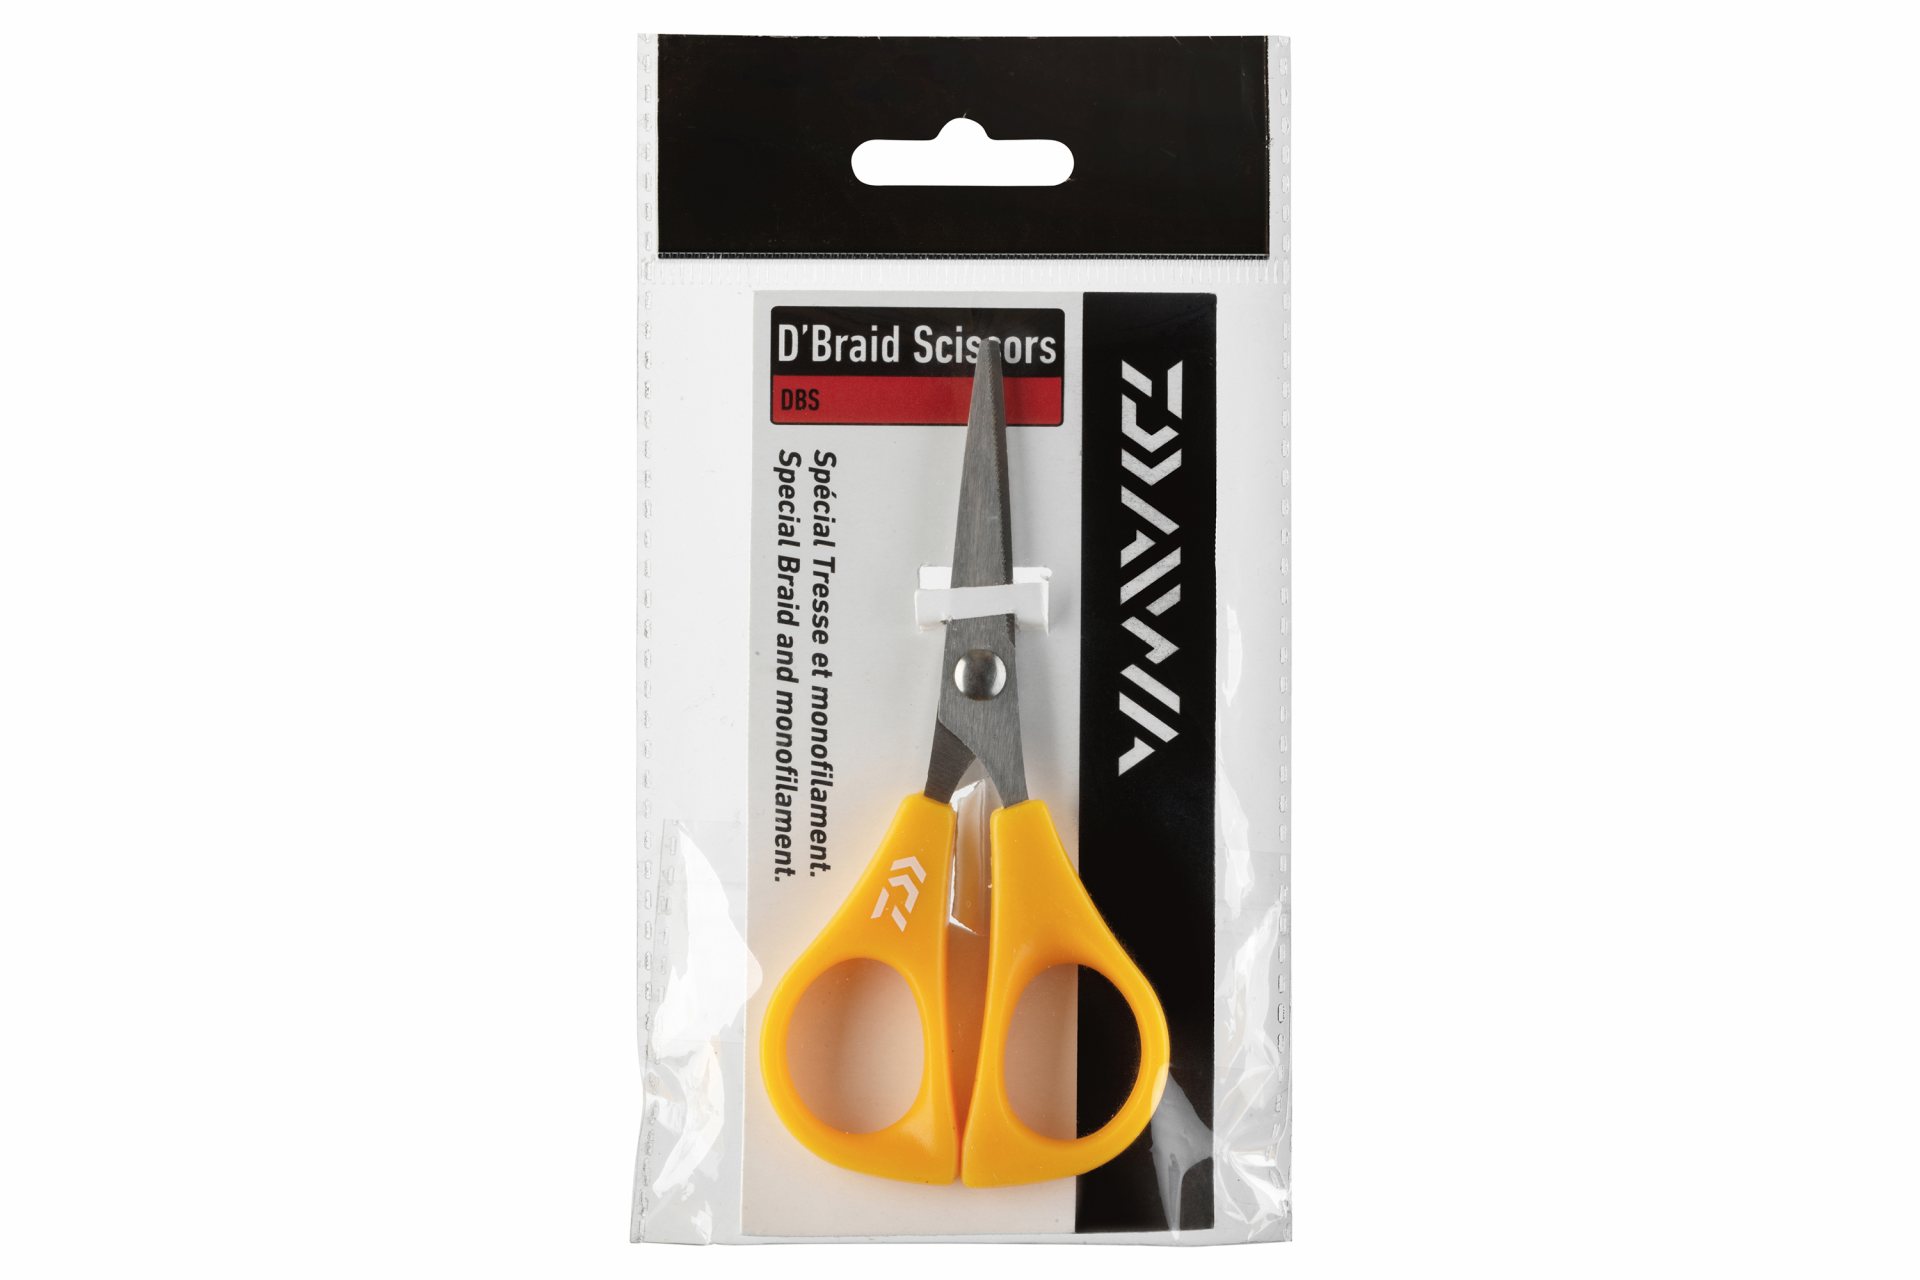 Daiwa D'Braid Scissors <span>| Olló | fonott és monofil zsinórhoz</span>